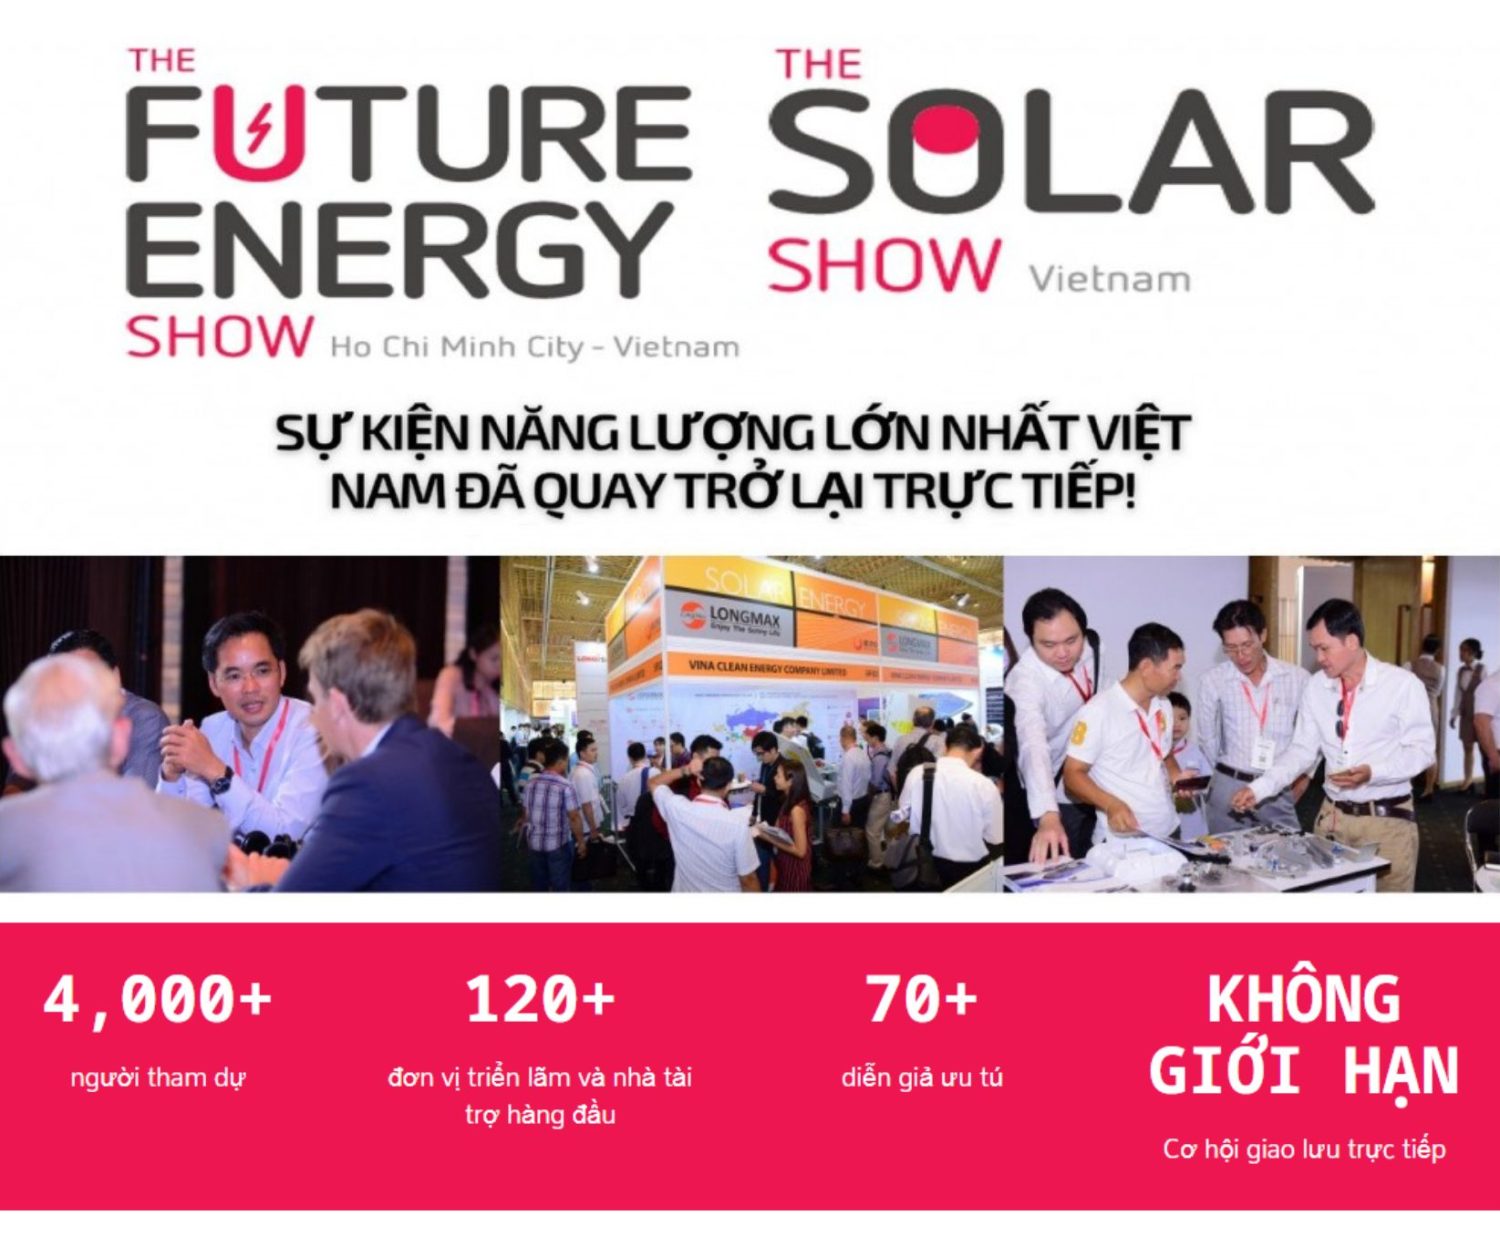 The Future Energy Show Vietnam 2023 - Tìm hiểu và tham gia cùng FOCUS SOLAR